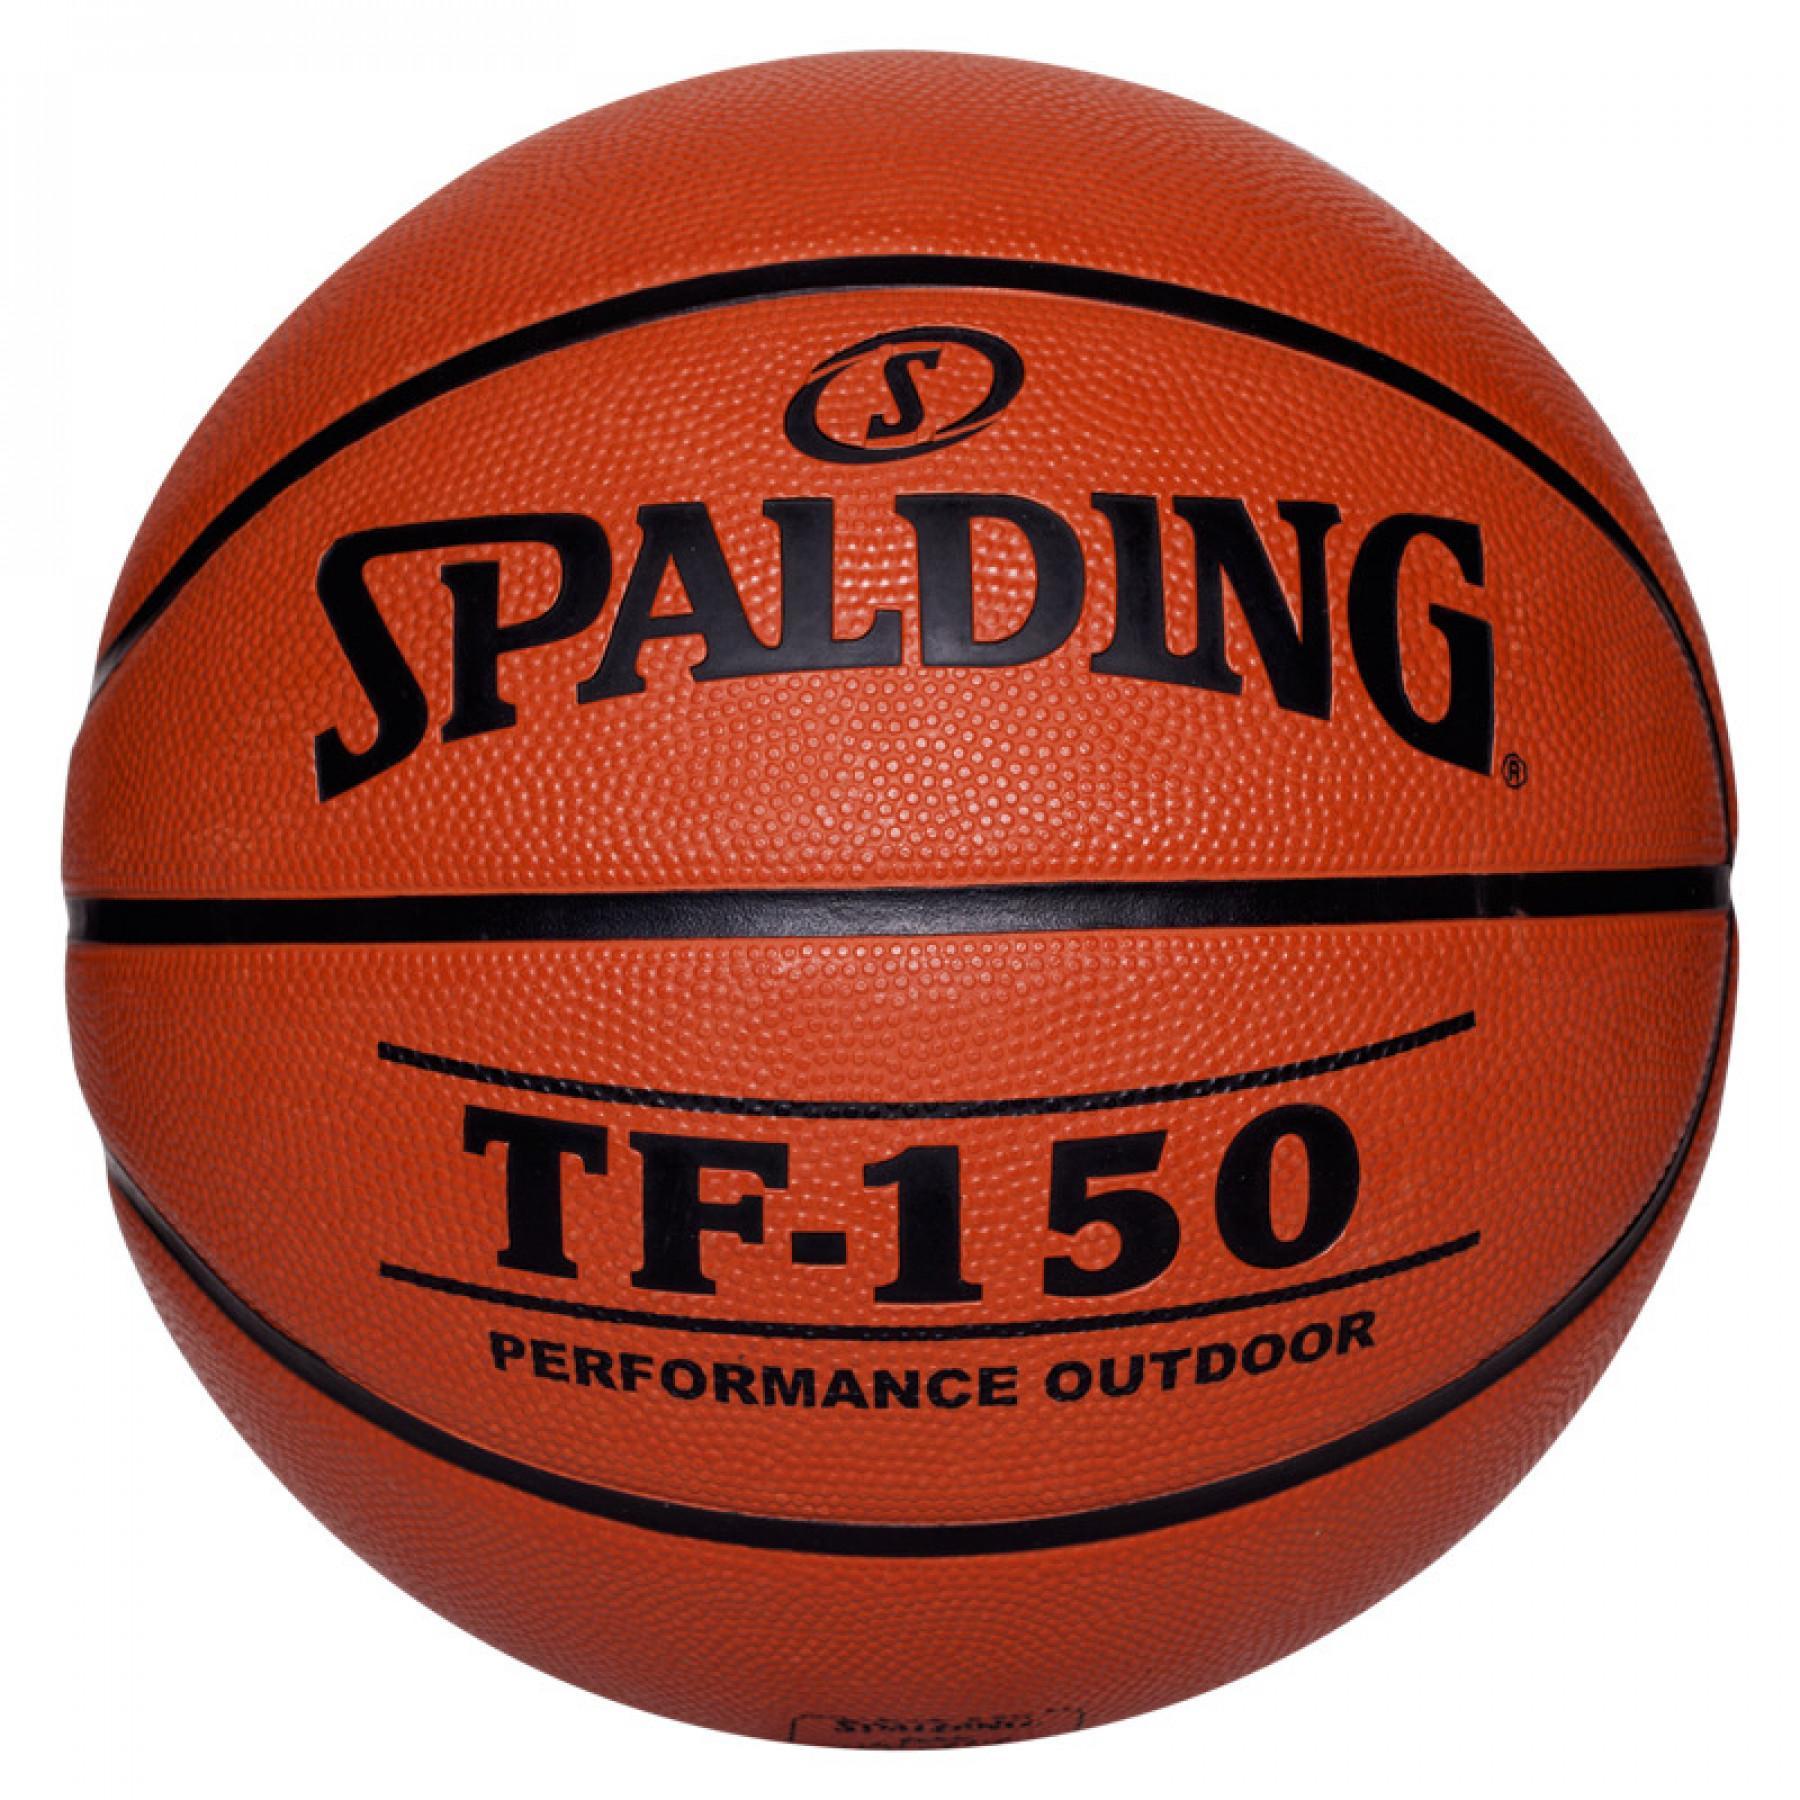 Ballon Spalding Tf150 Outdoor (73-955z)